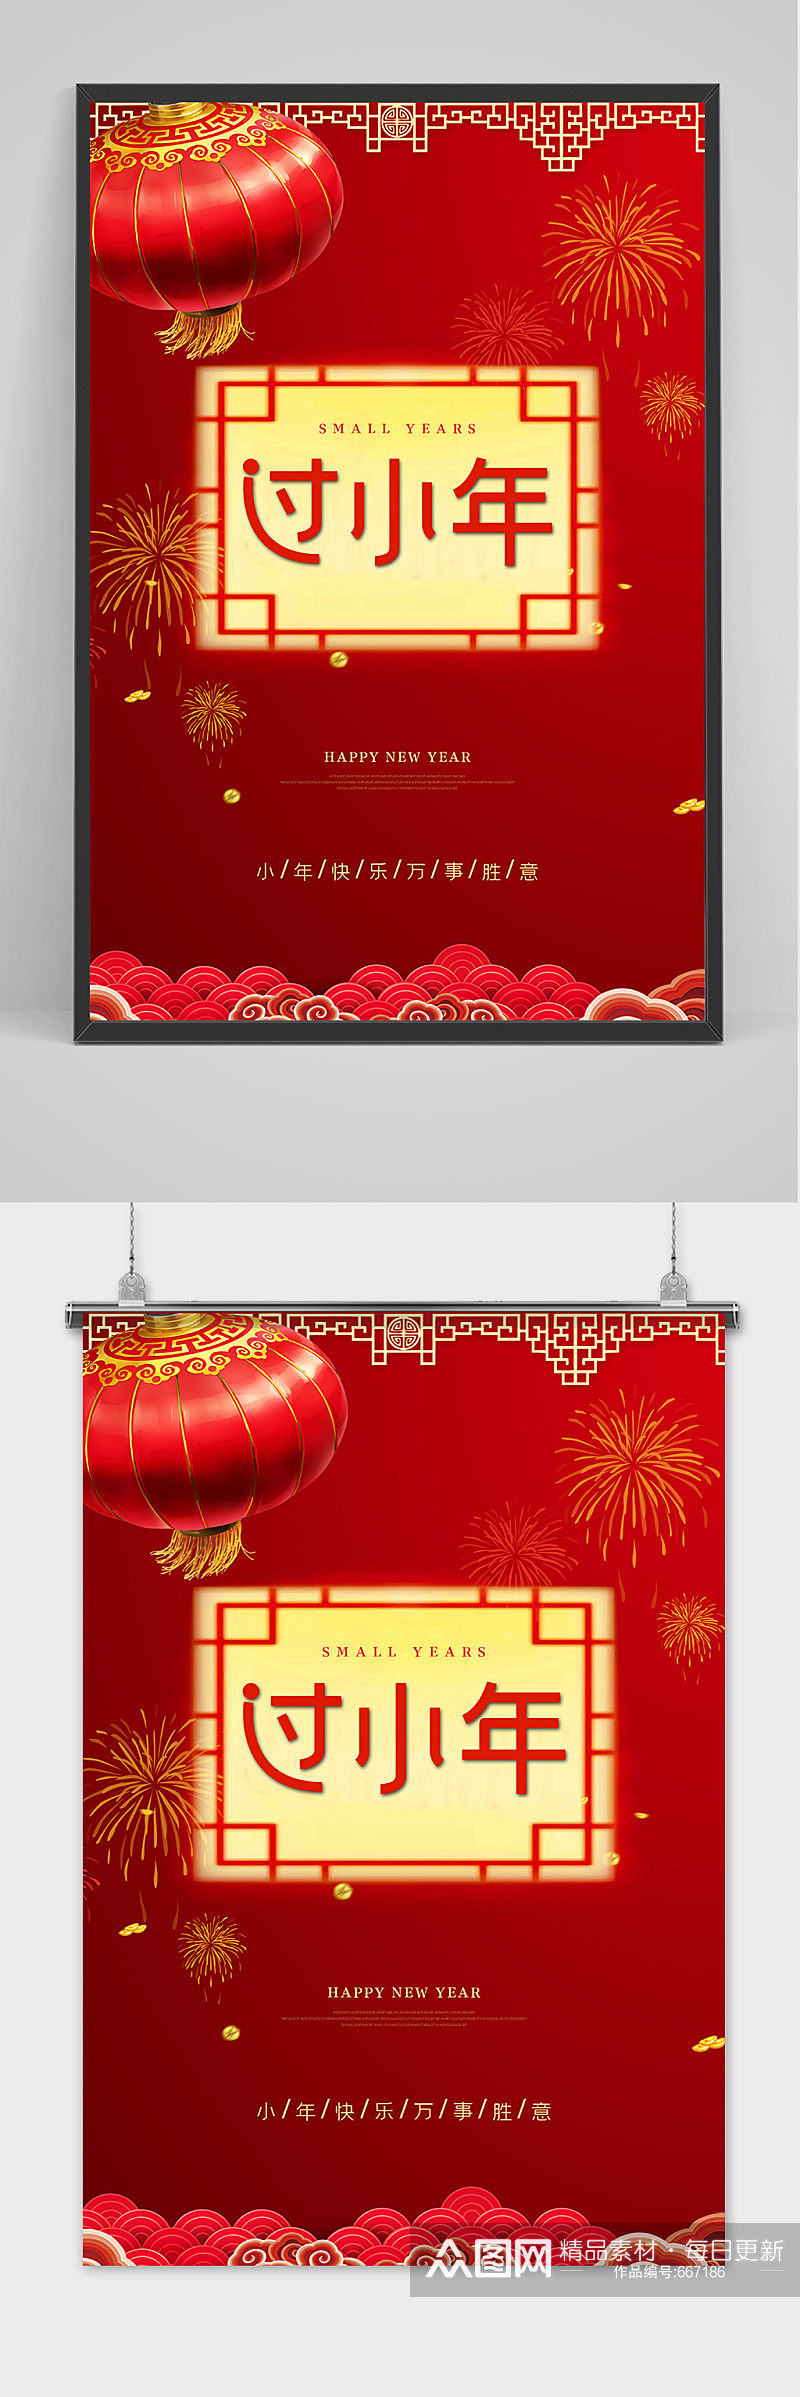 大气红色喜庆风格小年节日海报设计素材